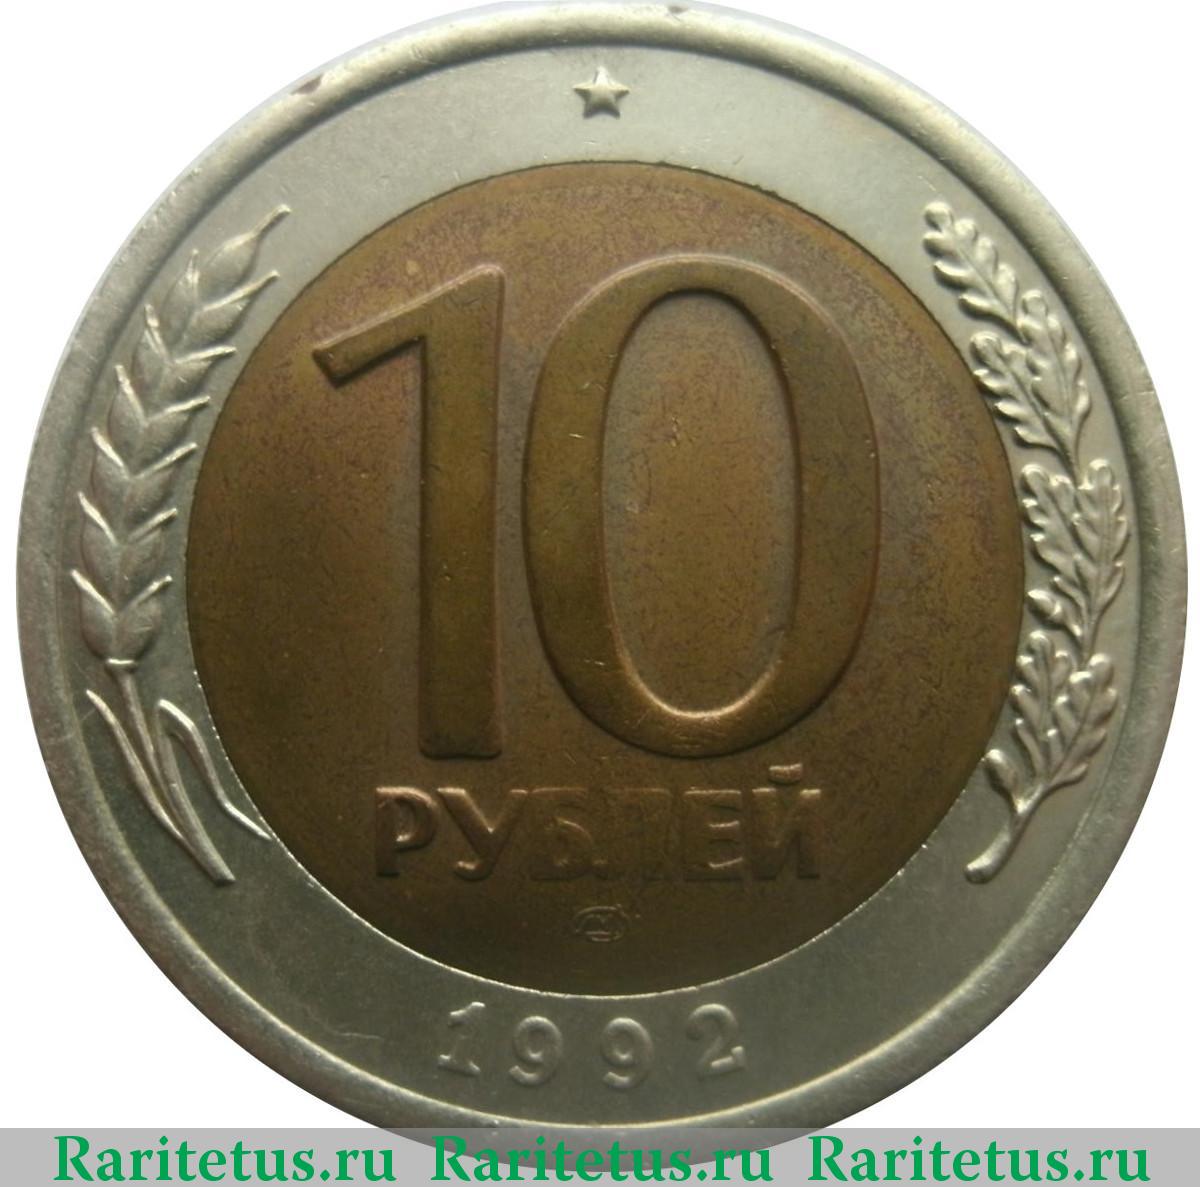 10 рублей. Биметалл. 1992 г. Реверс